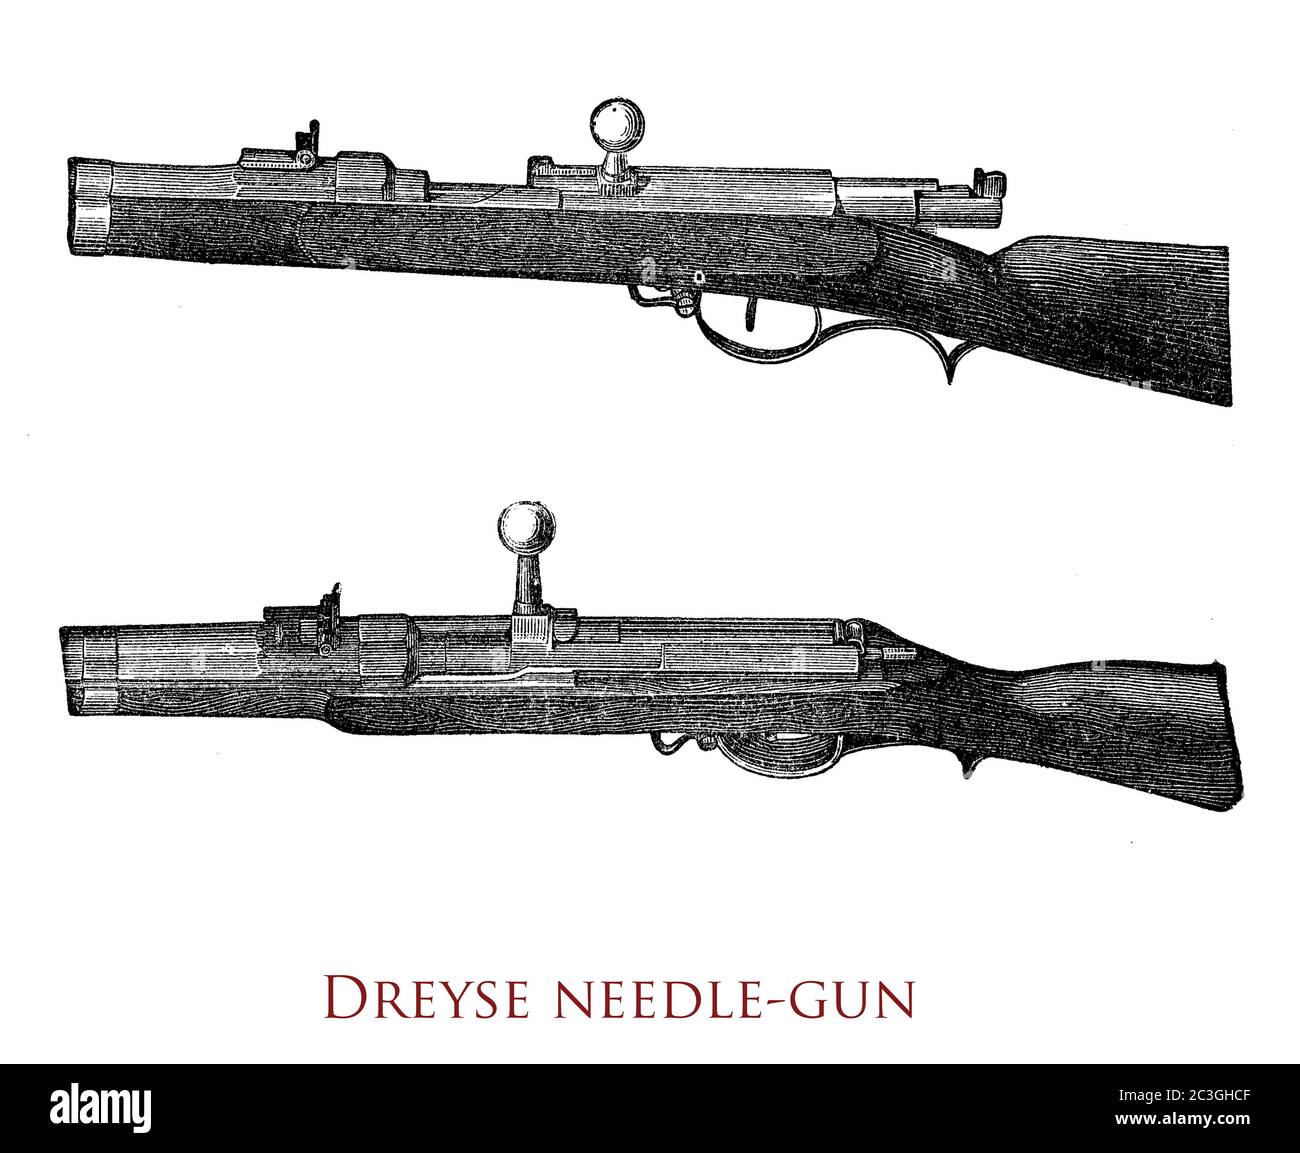 Dreyse, aiguille-canon, fusil à aiguille à allumage avec broche de tir utilisée par l'armée prussienne depuis 1841 inventée par Johann Nikolaus von Dreyse Banque D'Images